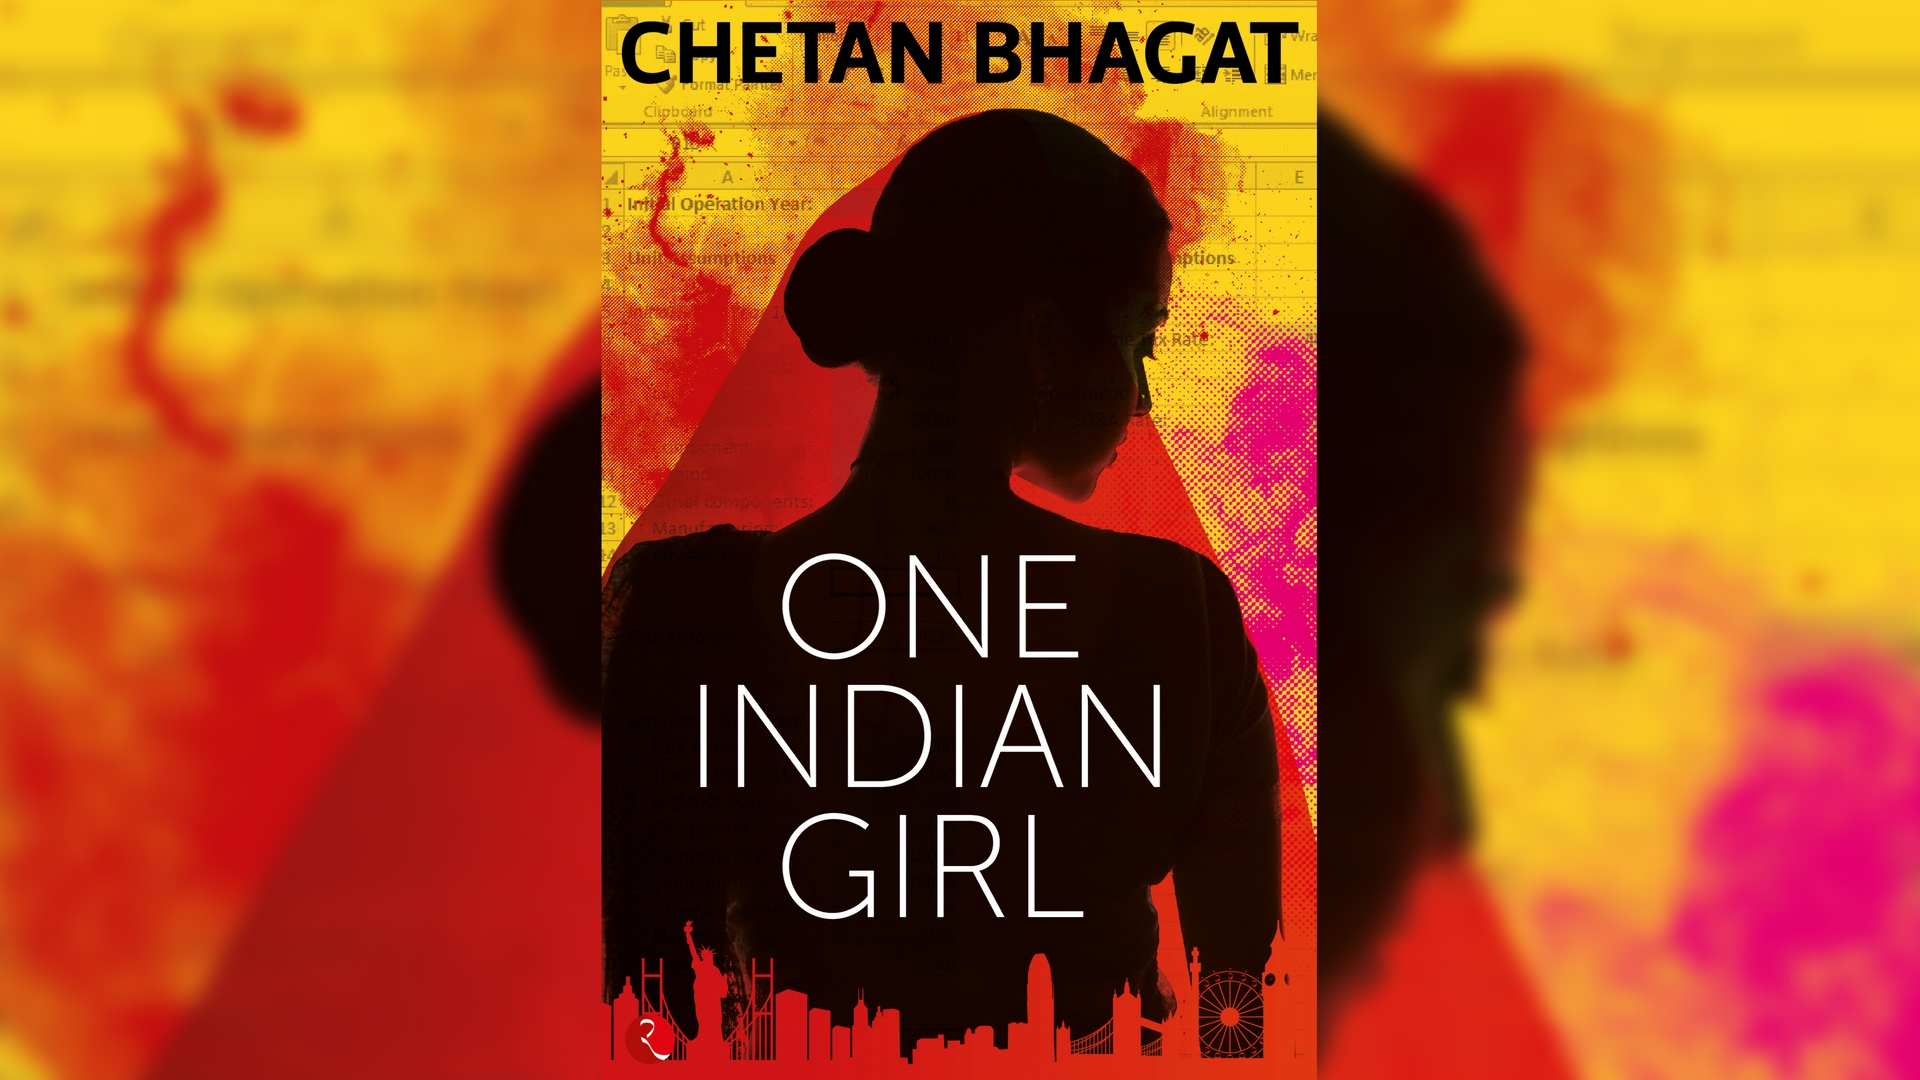 Chetan bhagat story